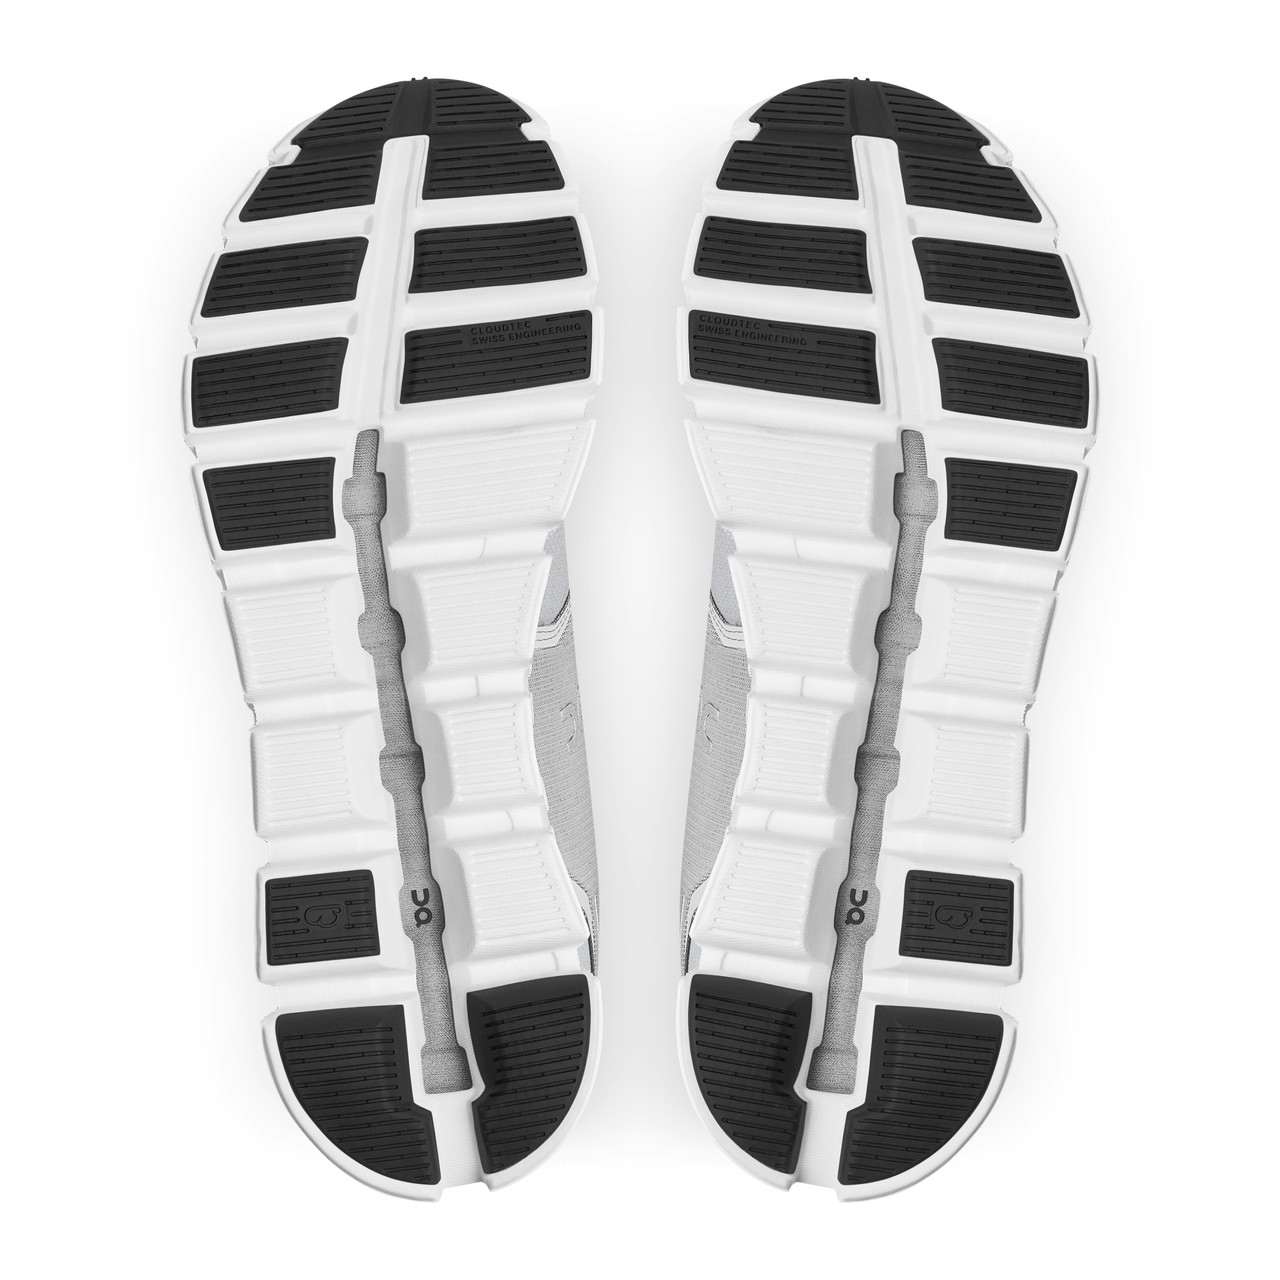 Cloud 5 Waterproof Shoes Glacier/White